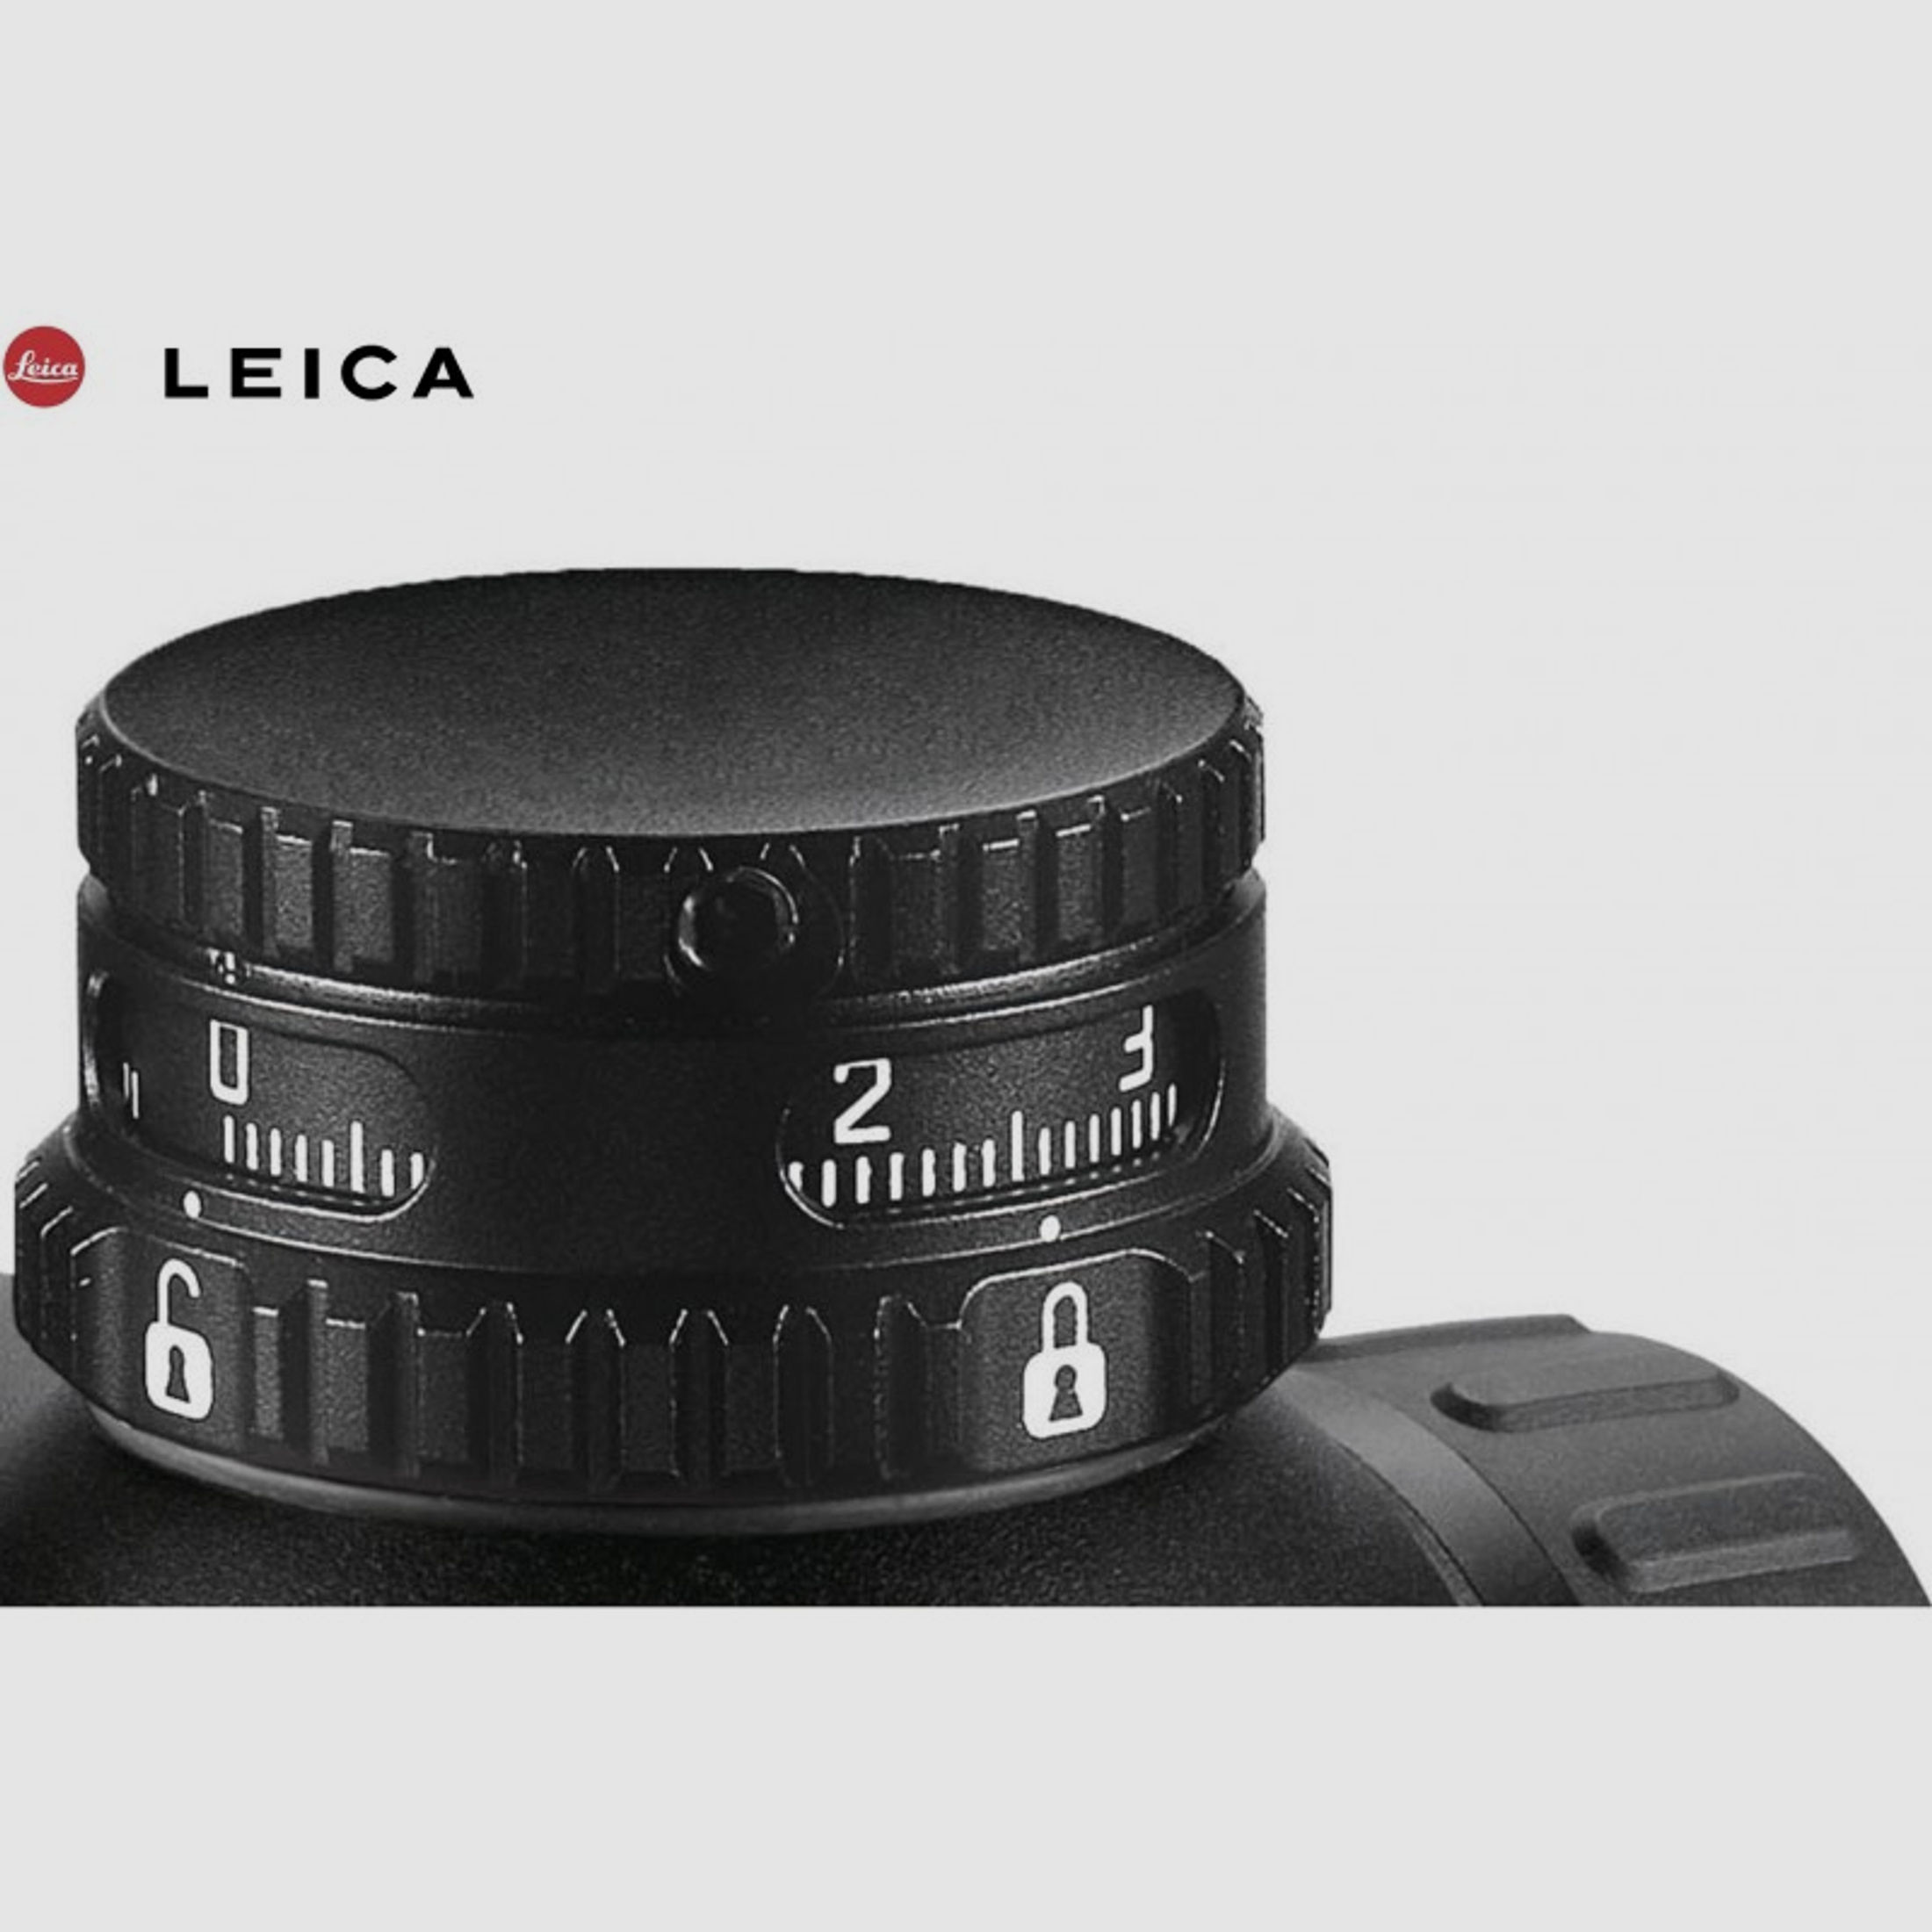 Leica Magnus 1,8-12x50 i, L-4a BDC